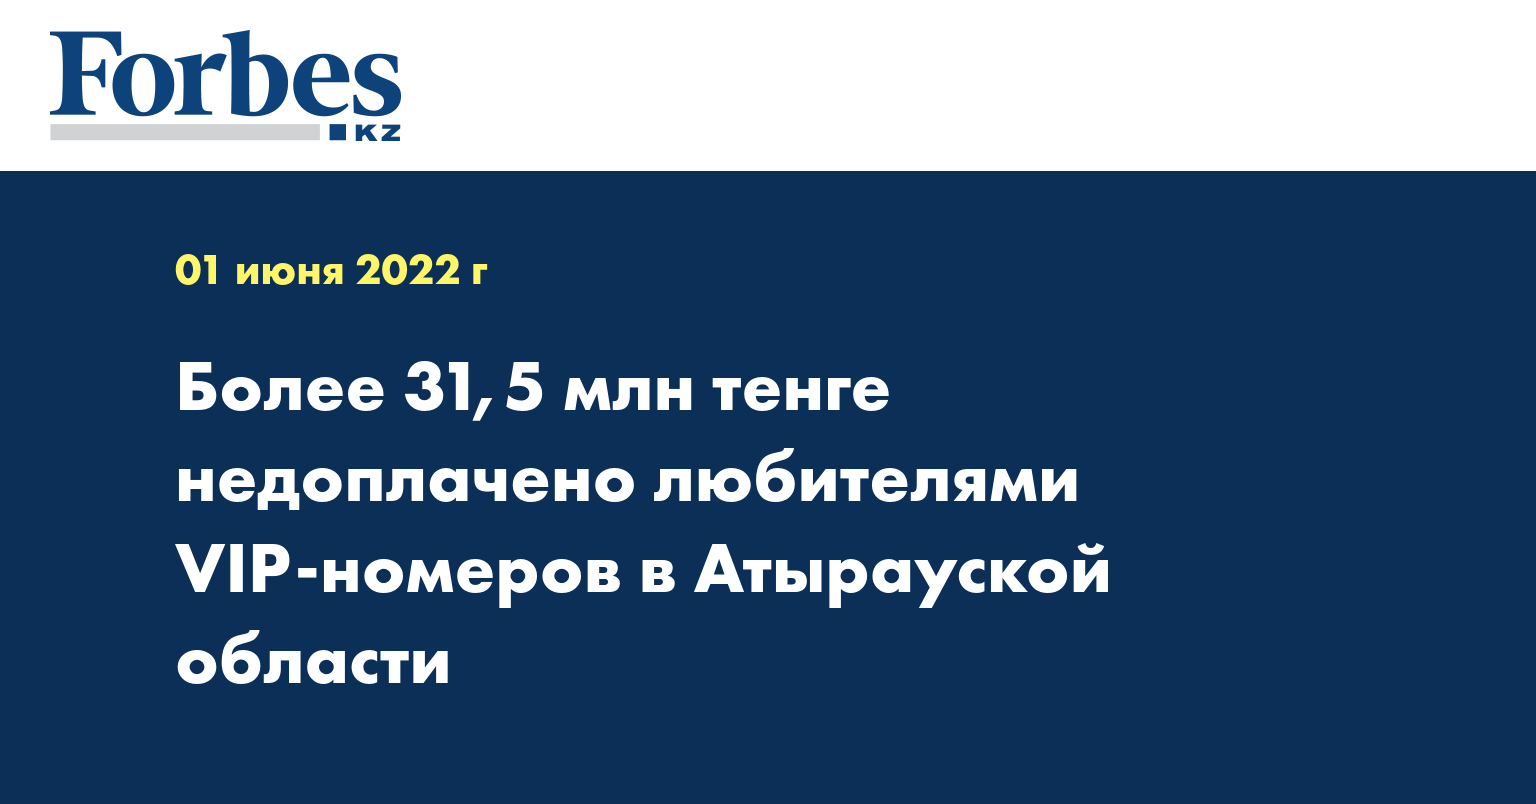 Более 31,5 млн тенге недоплачено любителями VIP-номеров в Атырауской области